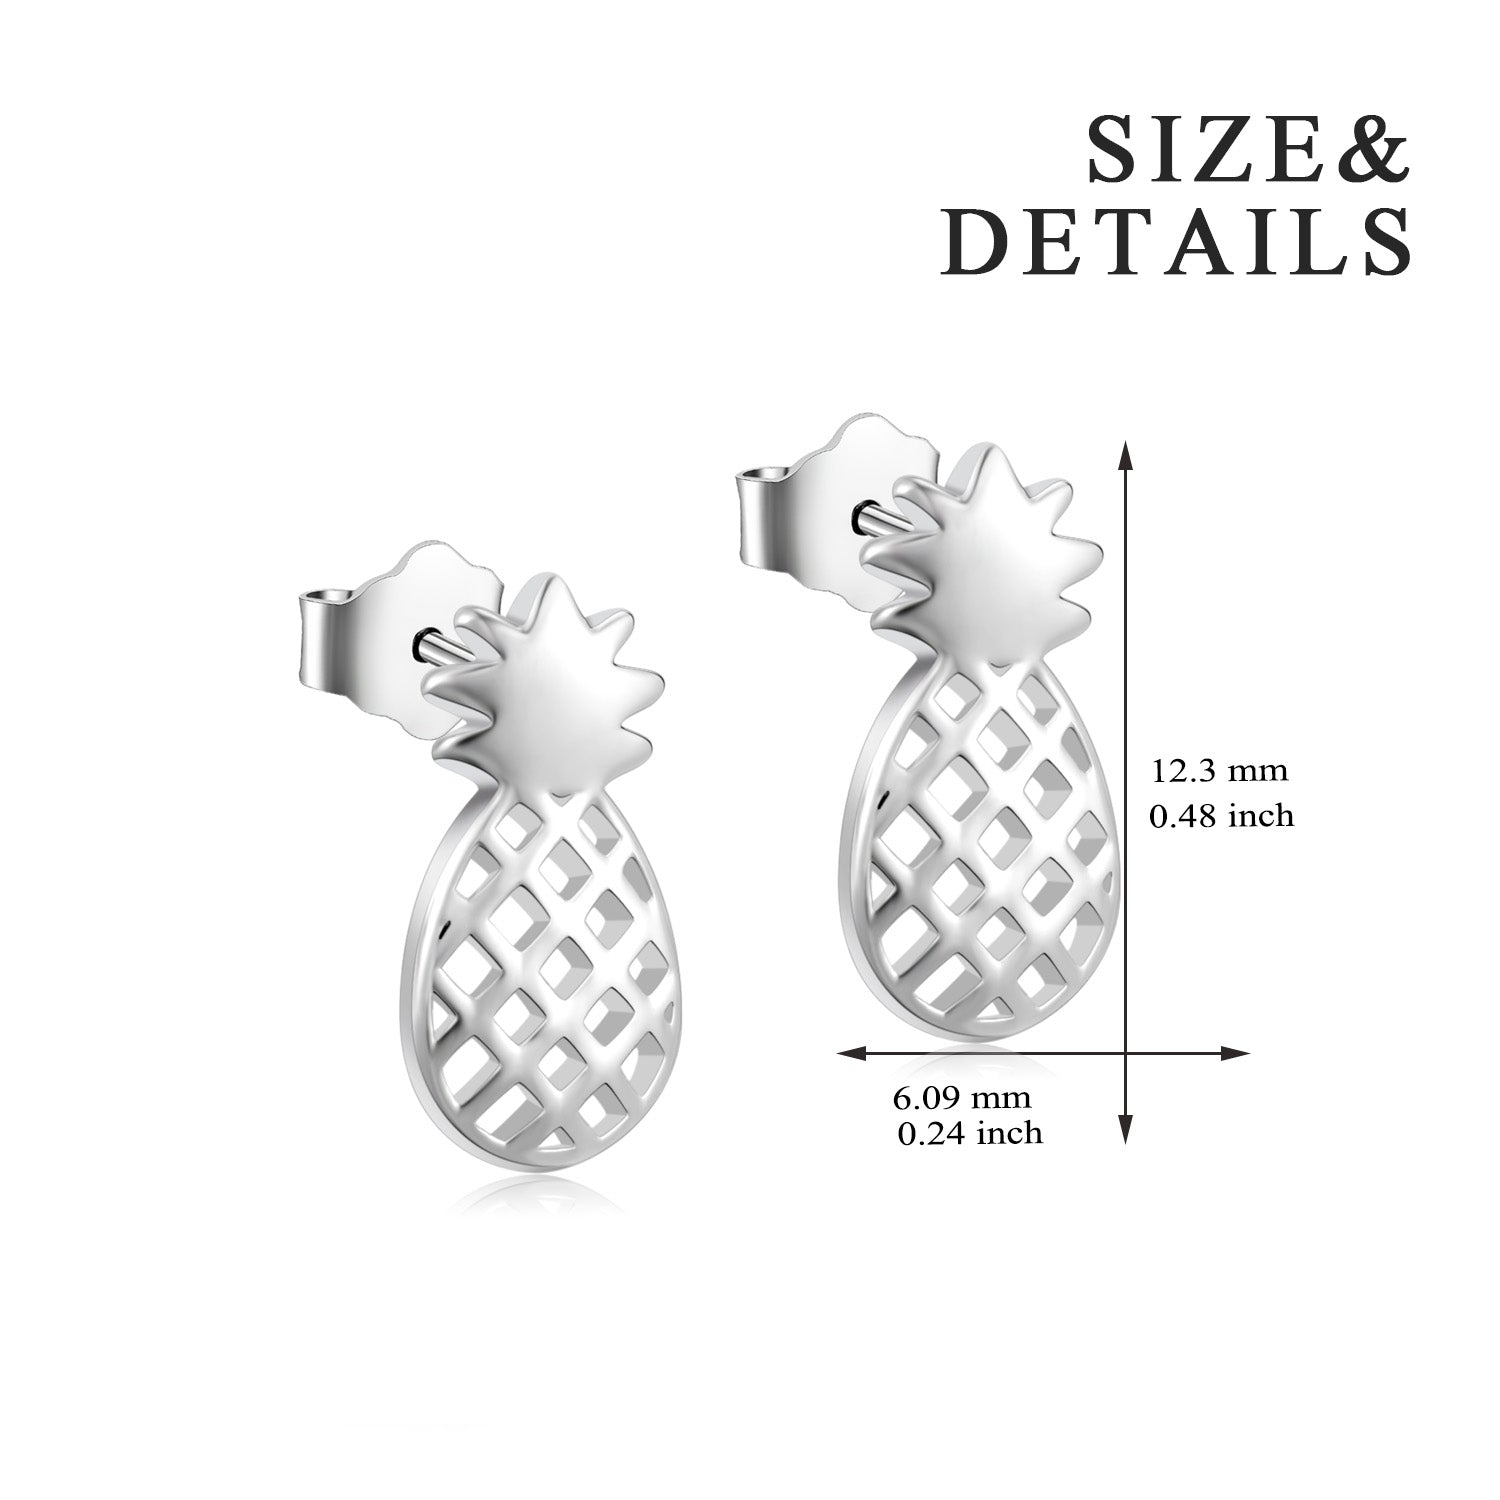 Pineapple Earrings Light Weight Cheap Silver Fruit Shape Earrings